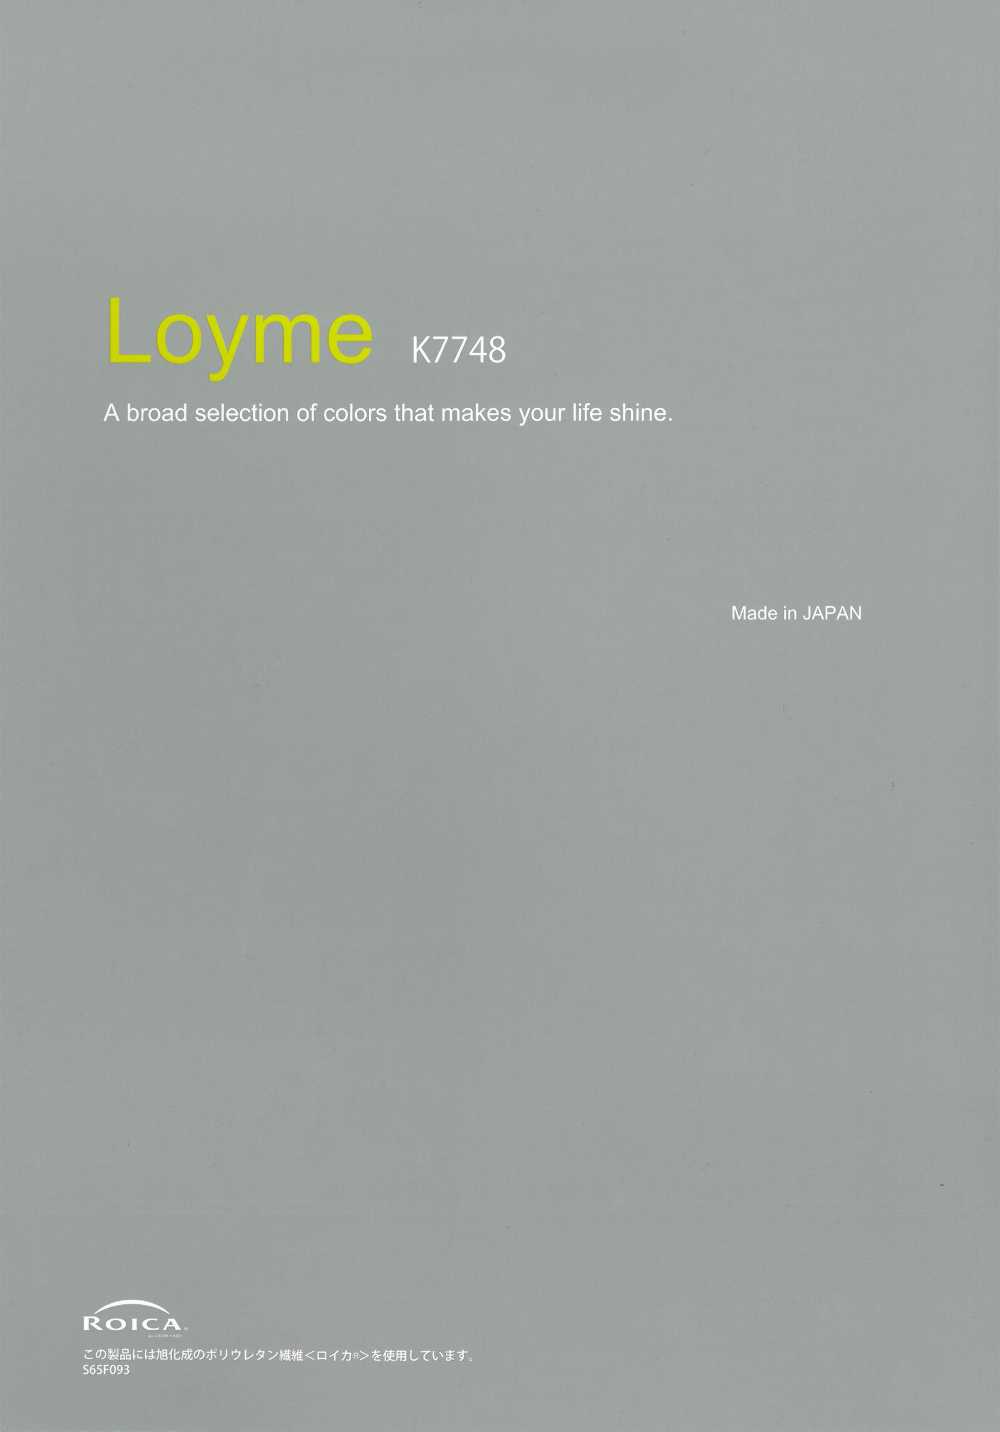 K7748 Loyme Polyester Cation 2WAY Vải Trơn Không Hoạ Tiết Fules Design